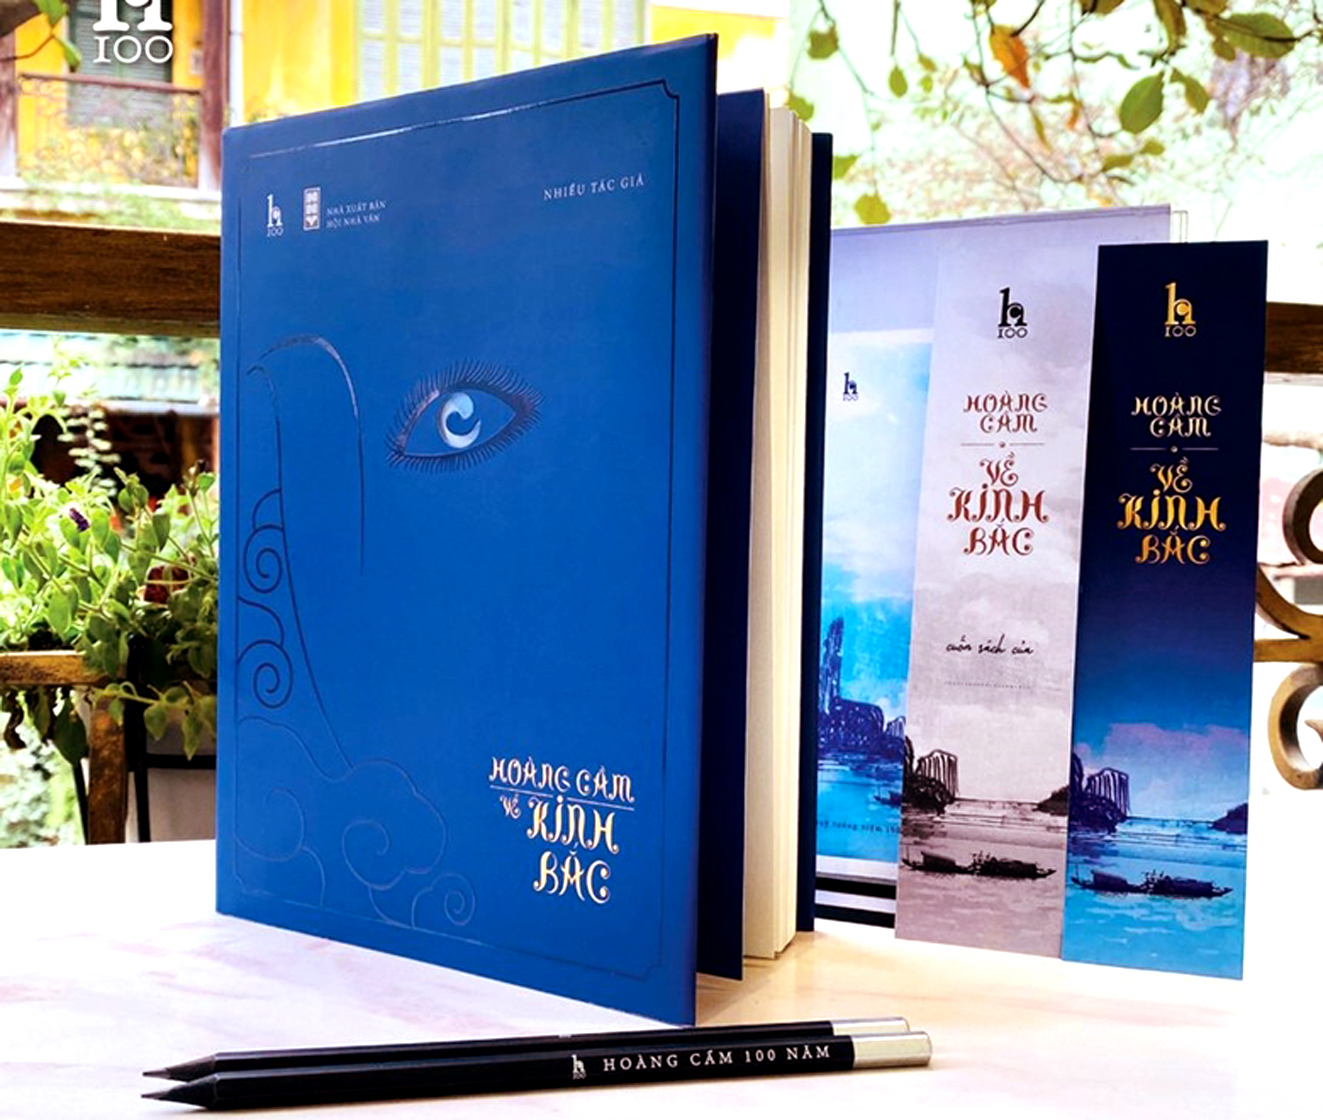 Sách Hoàng Cầm về Kinh Bắc được một số nhà nghiên cứu đánh giá có thể xếp vào sách nghệ thuật